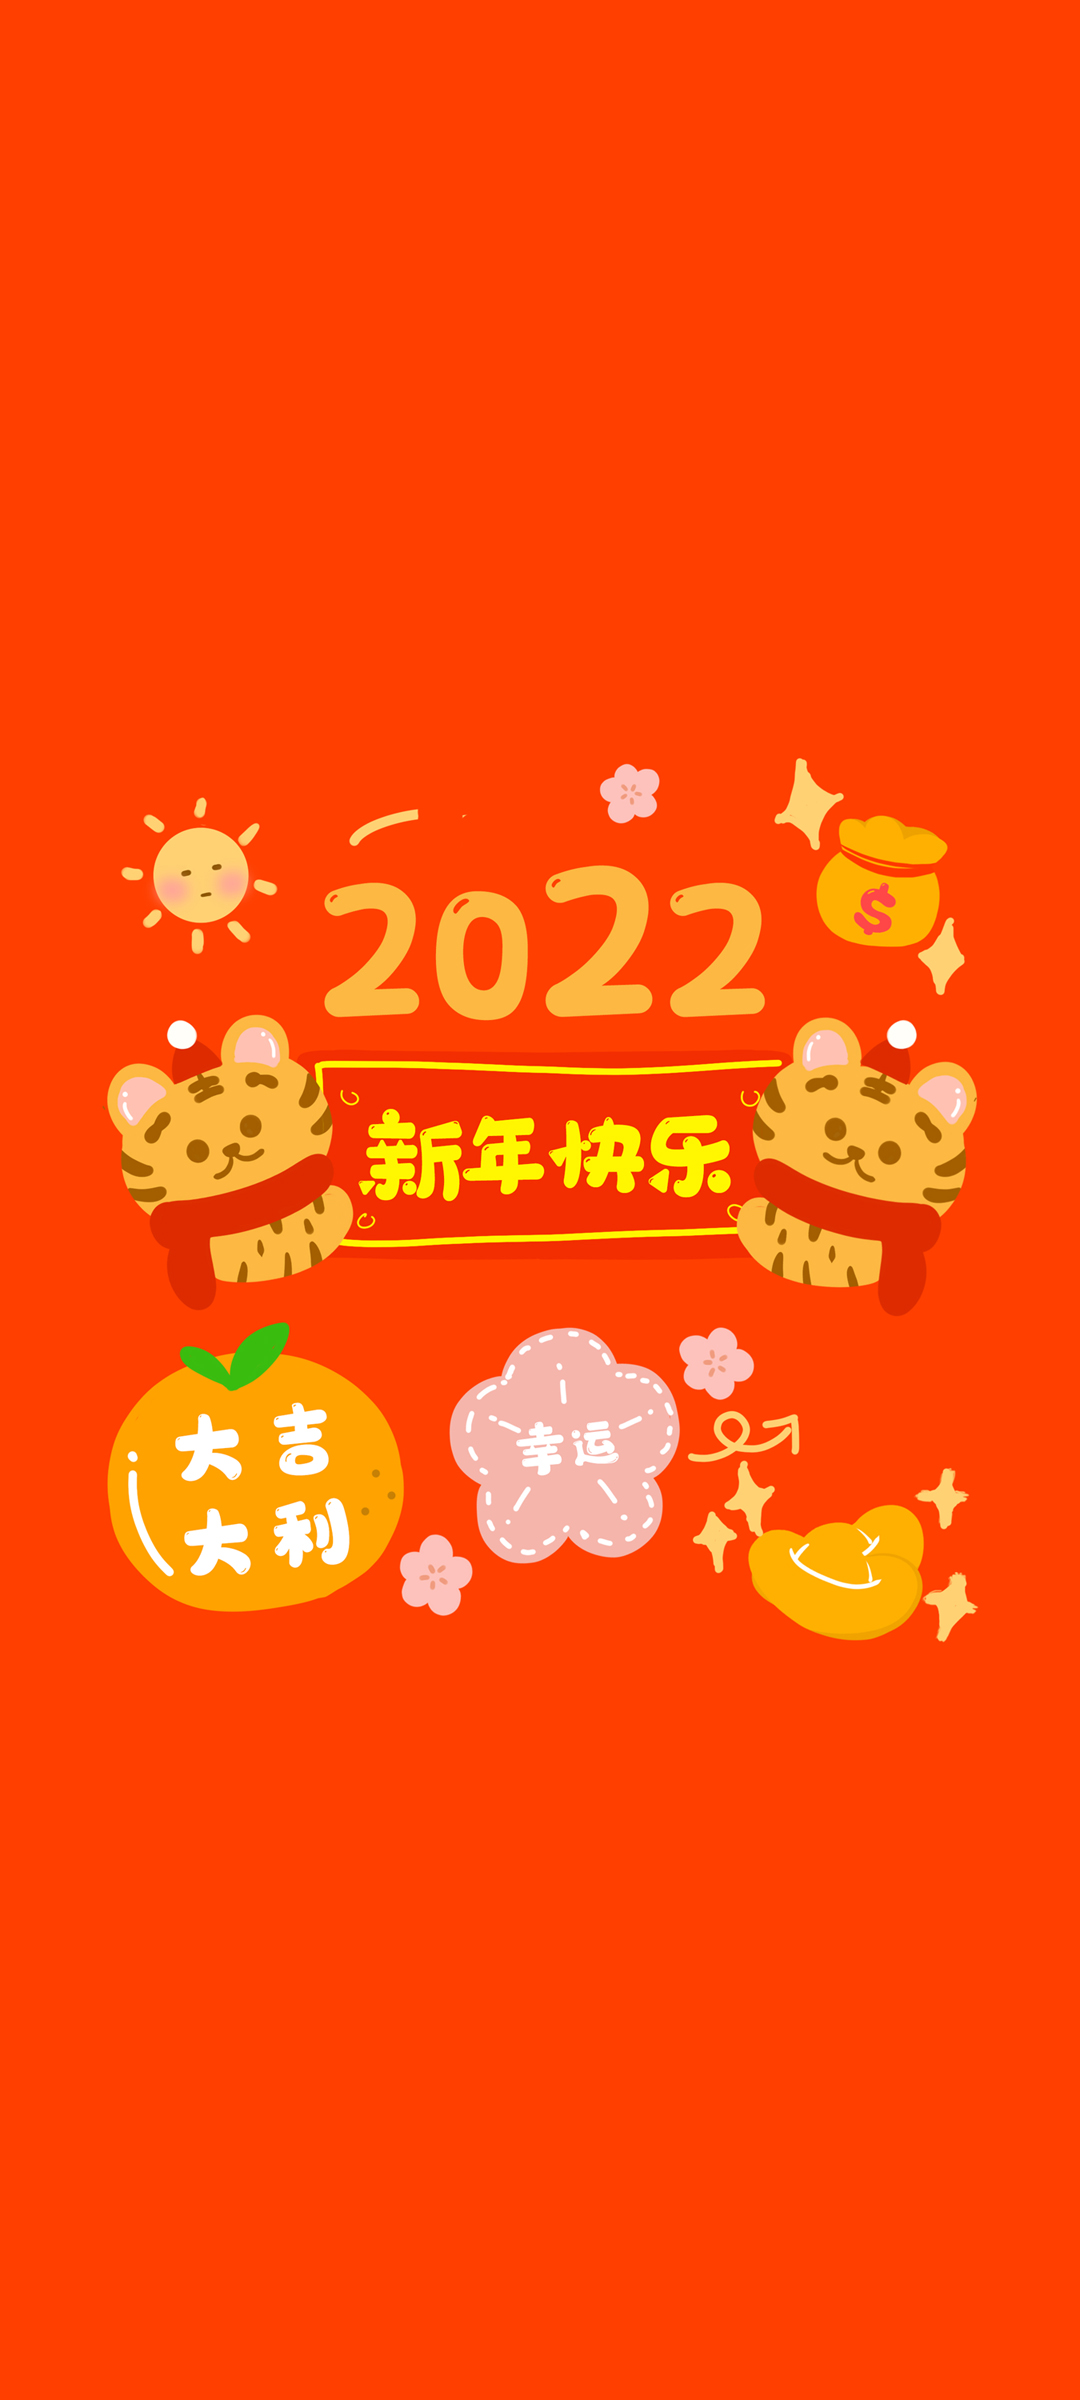 2022年新年快乐大吉大利红色喜庆背景